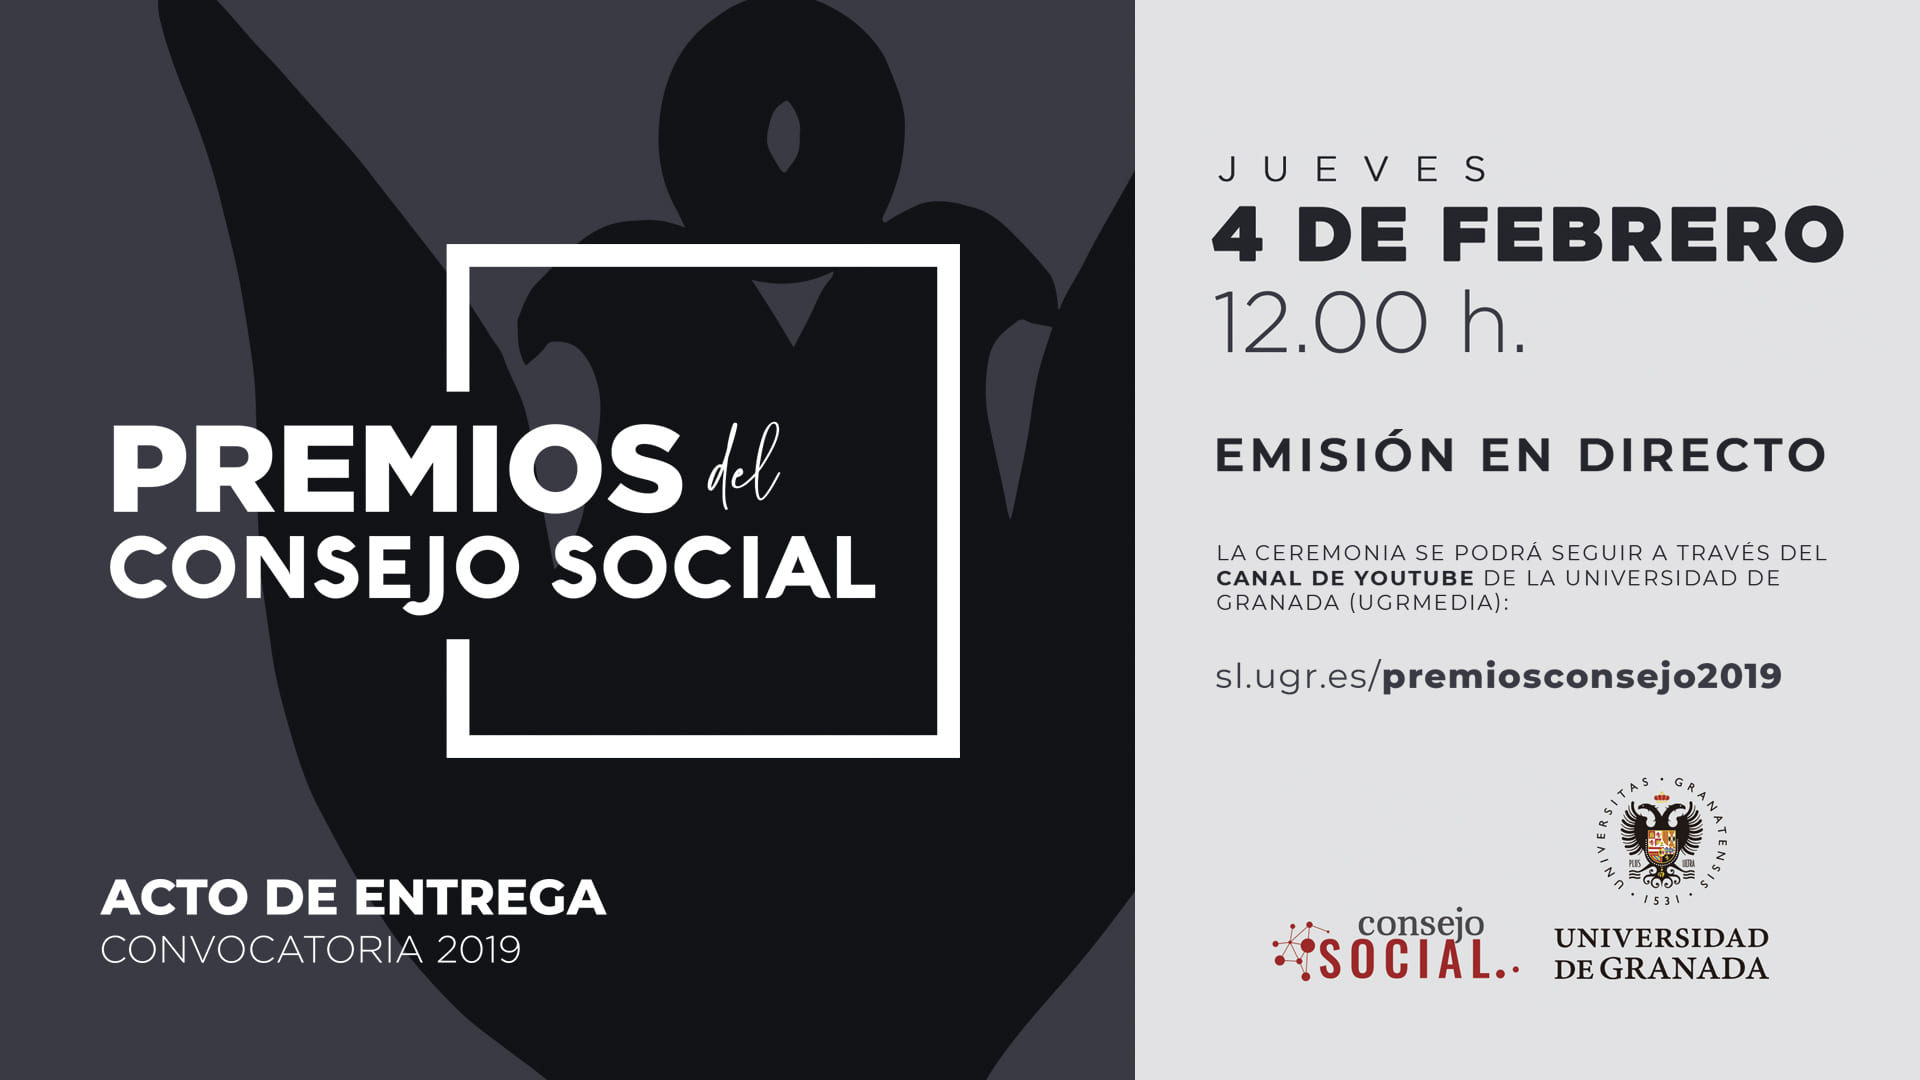 Cartel anunciador acto entrega Premios Consejo Social 2019